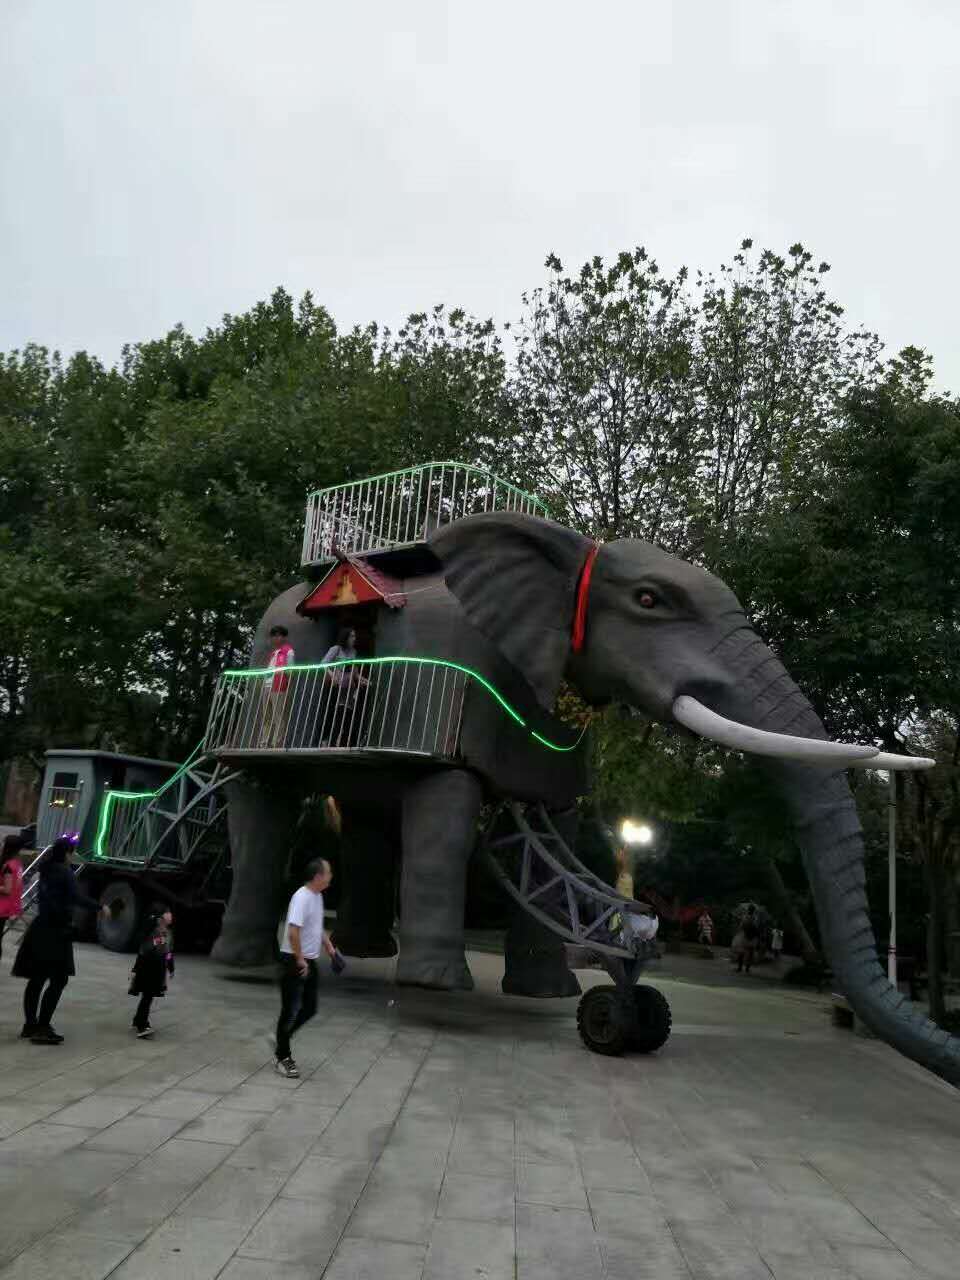 上海市巡游机械会喷水大象展览出租厂家巡游机械会喷水大象展览出租